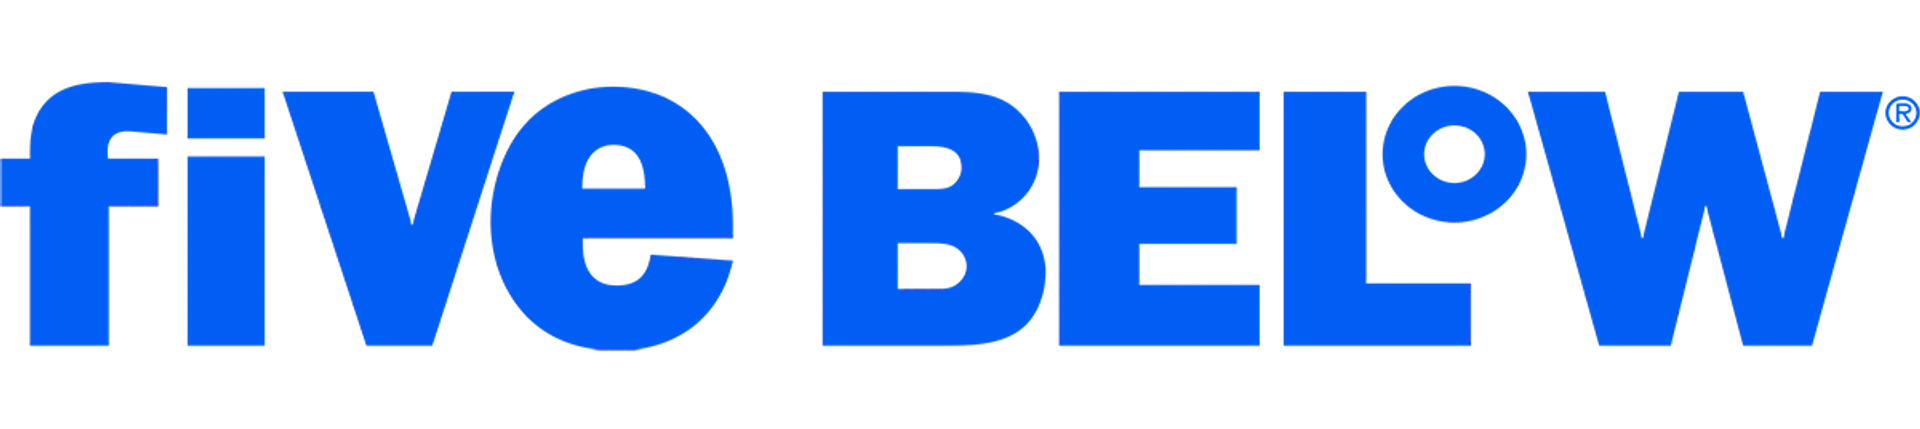 FIVE BELOW logo de catálogo